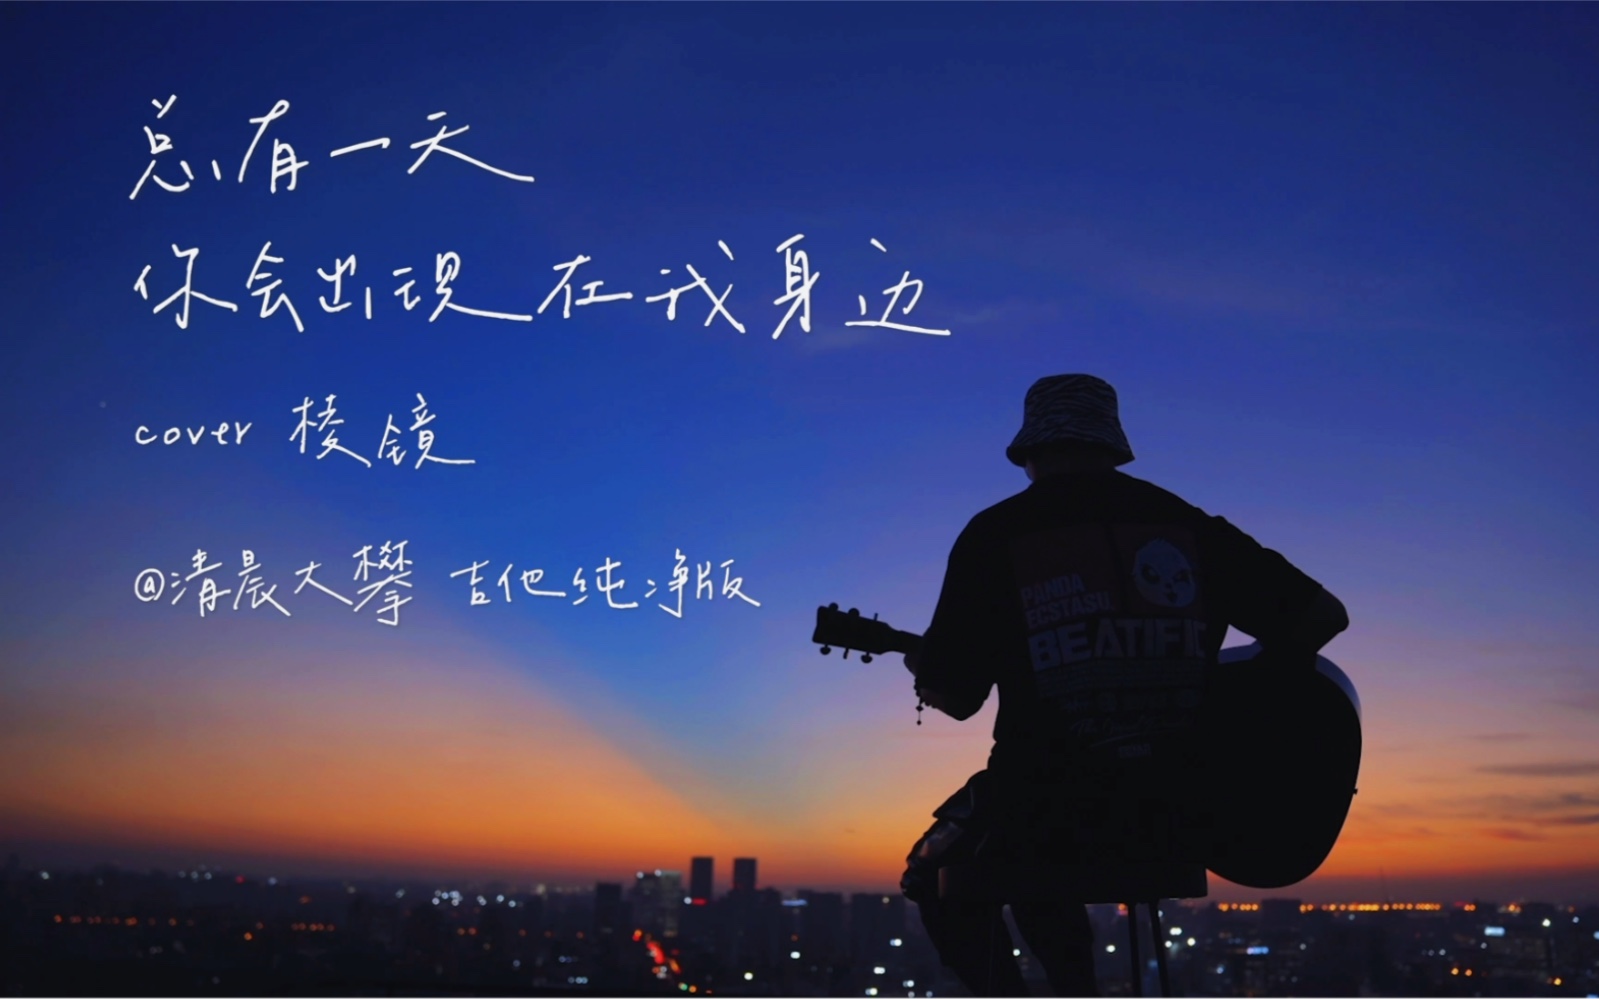 ‎遇到你 (電視劇《原來我很愛你》片頭曲) - Single - Album by Evan Lin & 萬鵬 - Apple Music